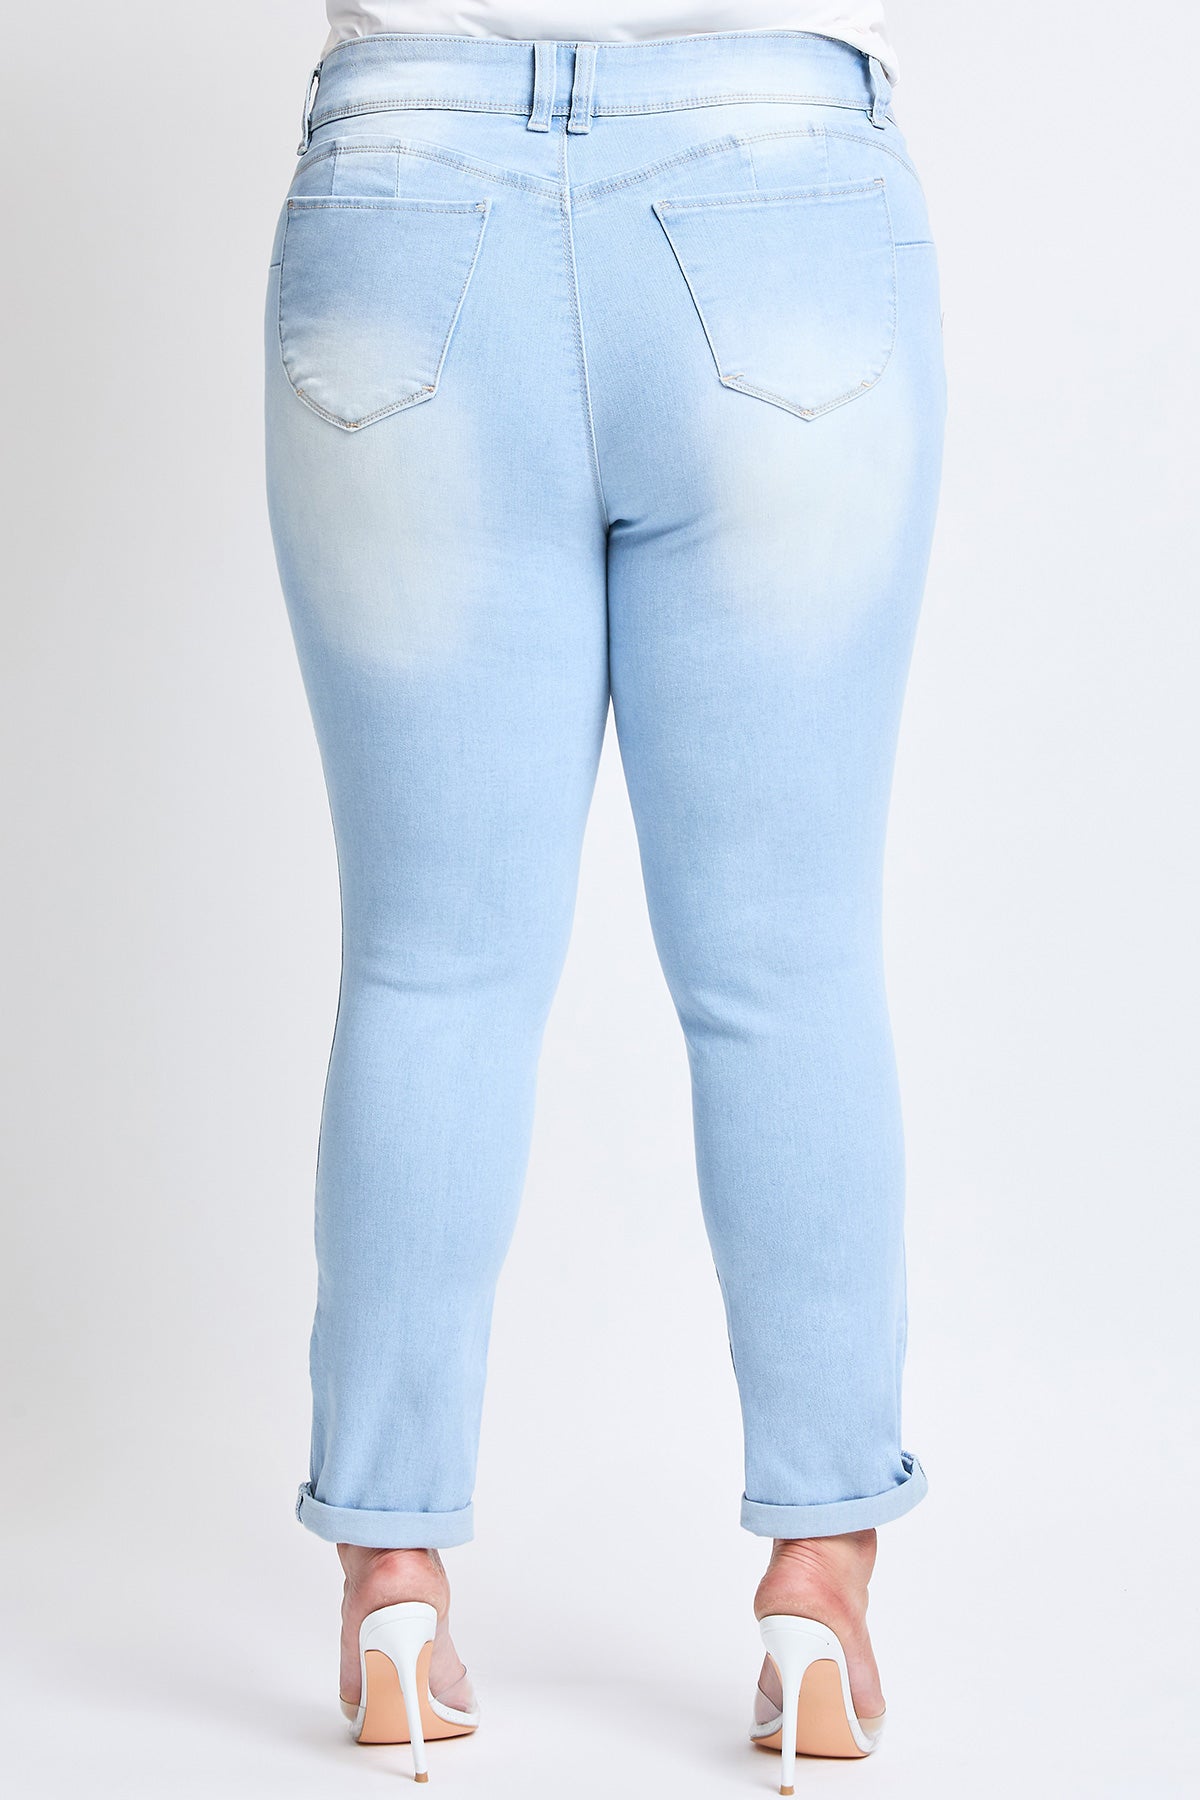 Plus Size Women's WannaBettaButt Cuffed Ankle Jeans-Sale